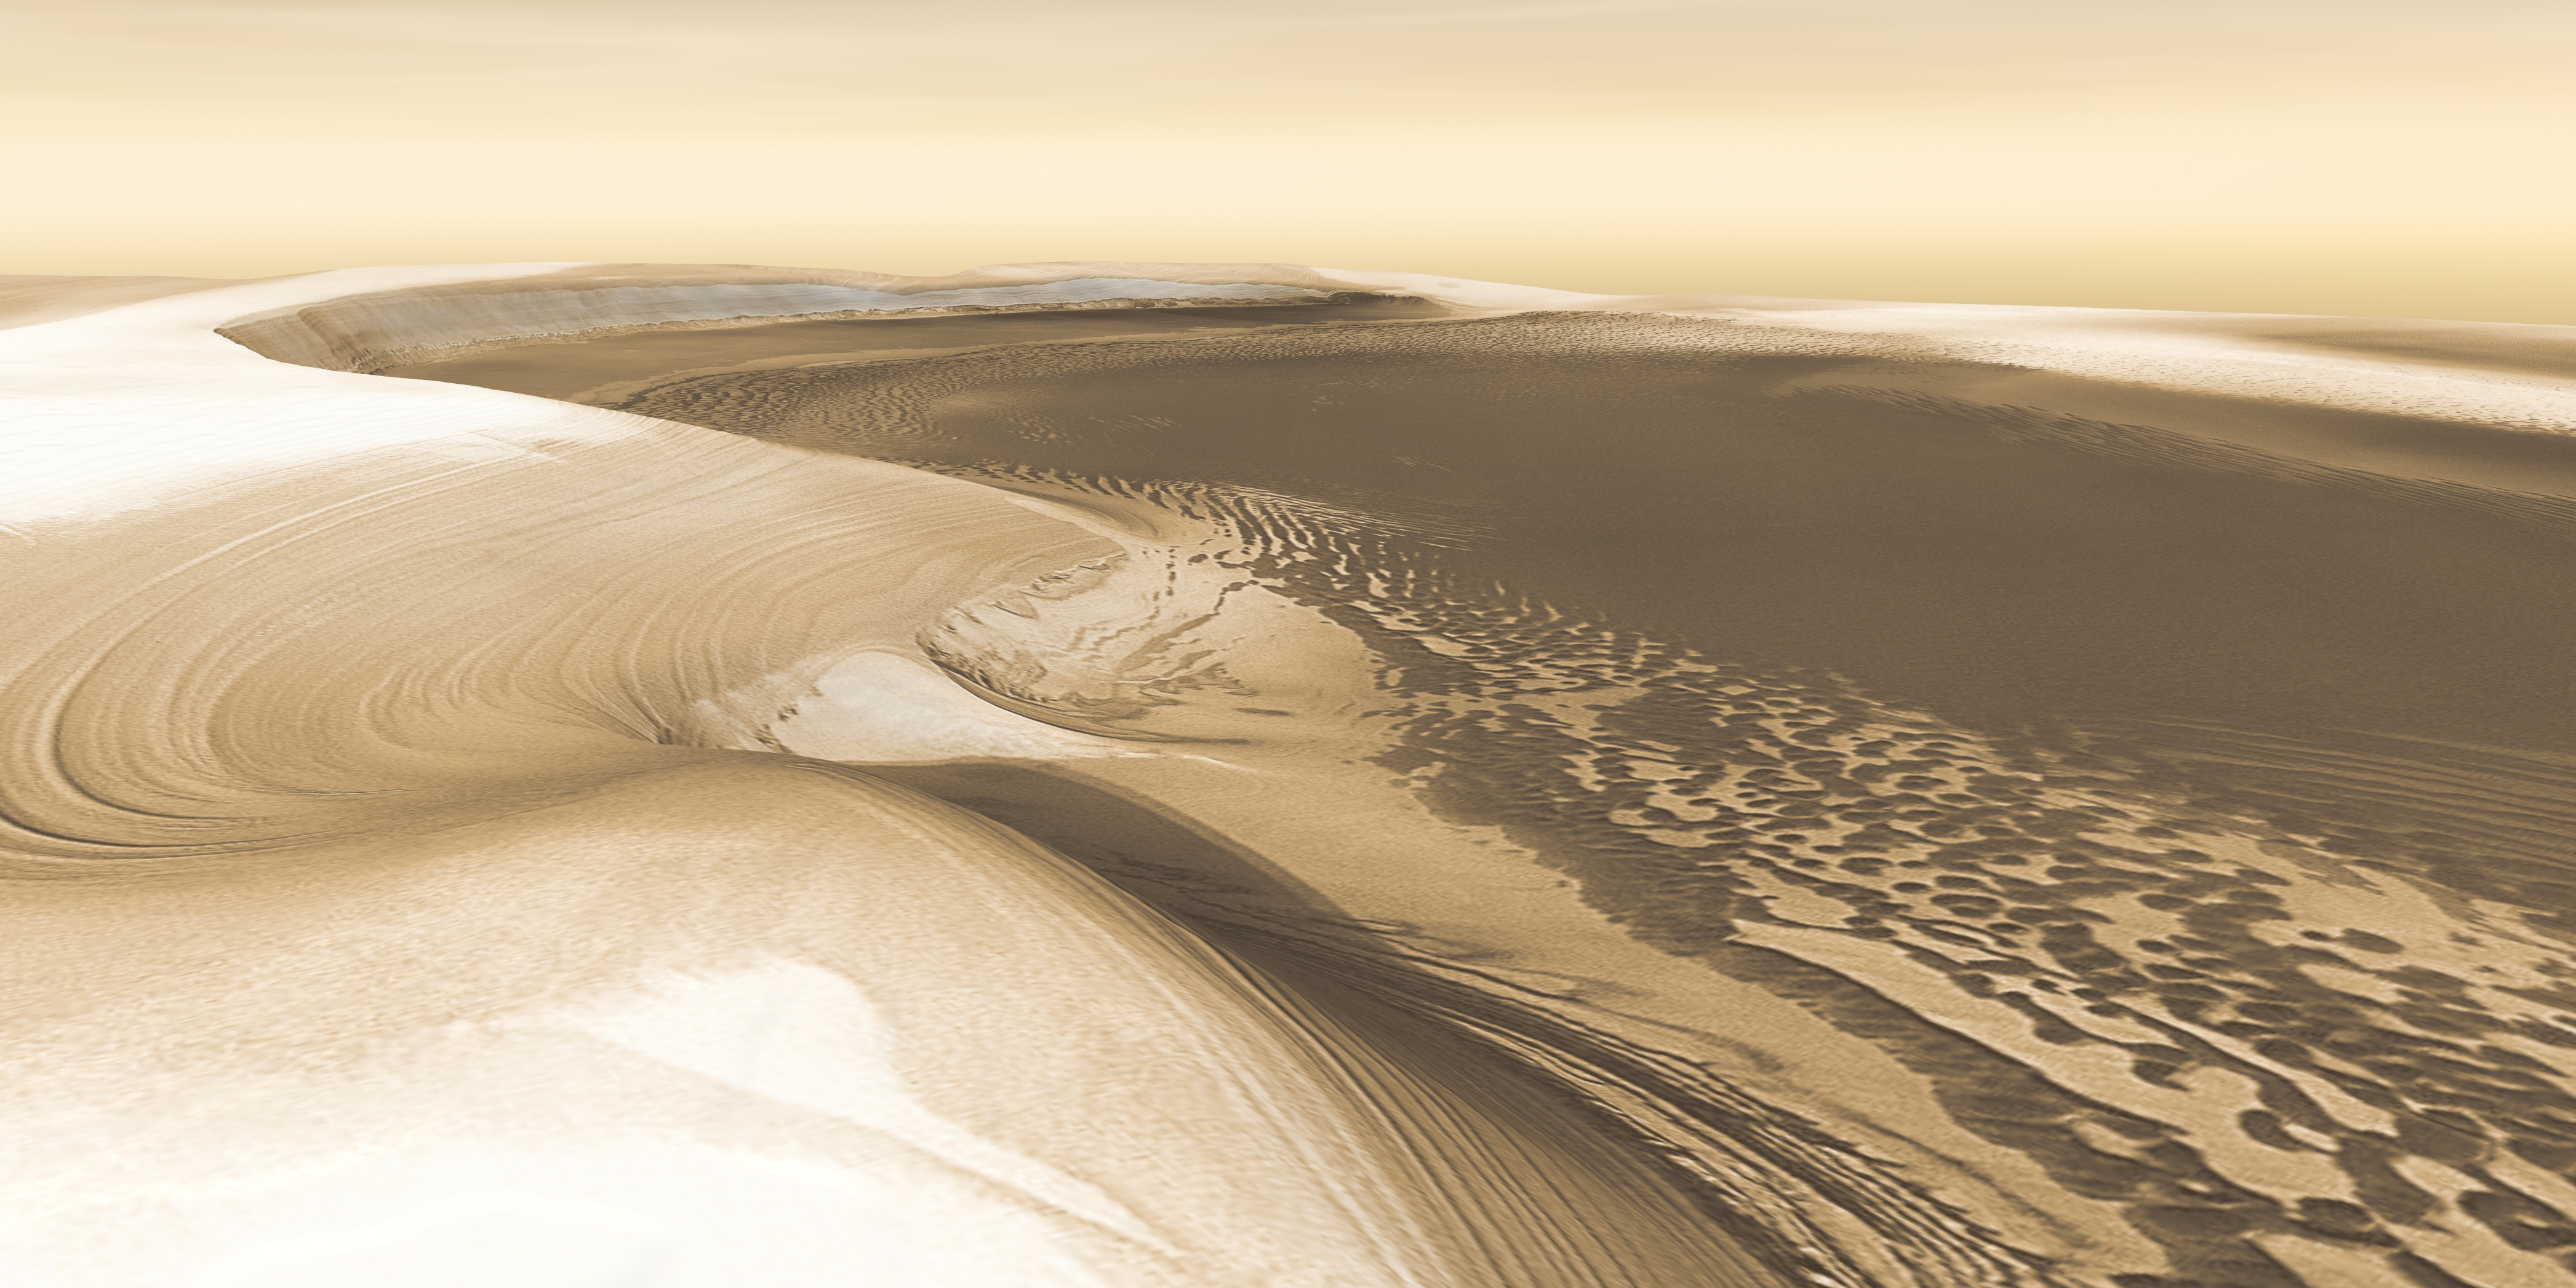 Cette vue imprenable montre ce qu'un explorateur pourrait voir au pôle nord de la planète rouge.  Cette image est une vue 3D créée à partir d'observations enregistrées par l'instrument THEMIS sur le vaisseau spatial Mars Odyssey de la NASA.  Image publiée le 26 mai 2016.